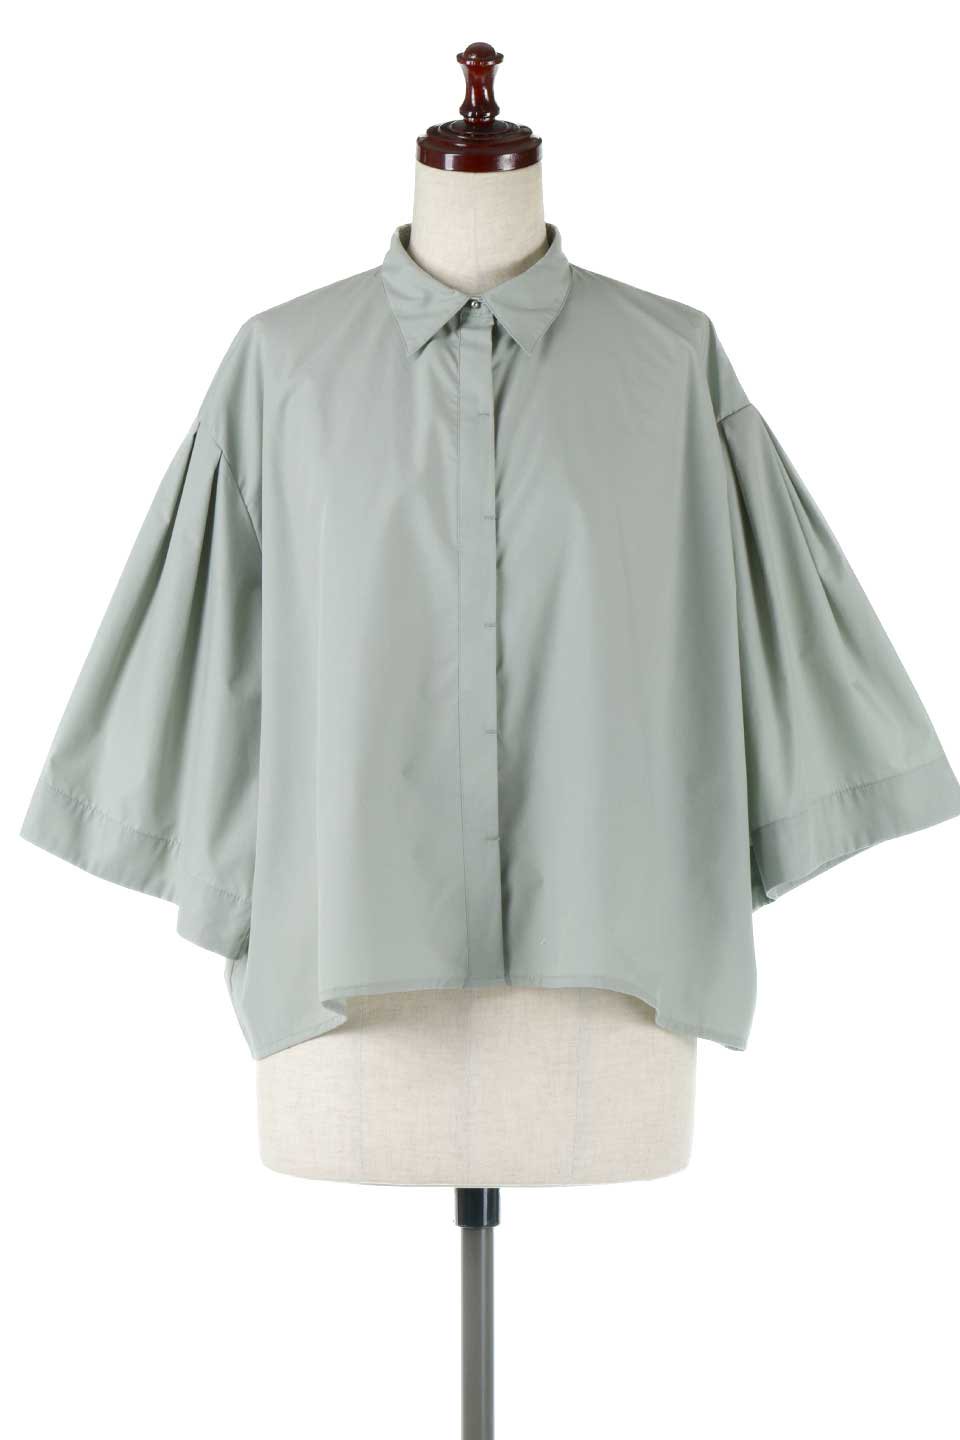 FlareHalfSleeveShirtsフレアスリーブ・五分袖シャツ大人カジュアルに最適な海外ファッションのothers（その他インポートアイテム）のトップスやシャツ・ブラウス。春夏に着たい半袖シャツをフレアスリーブにしたアイテム。サラッとしてなめらかな質感のシャツ生地を使用。